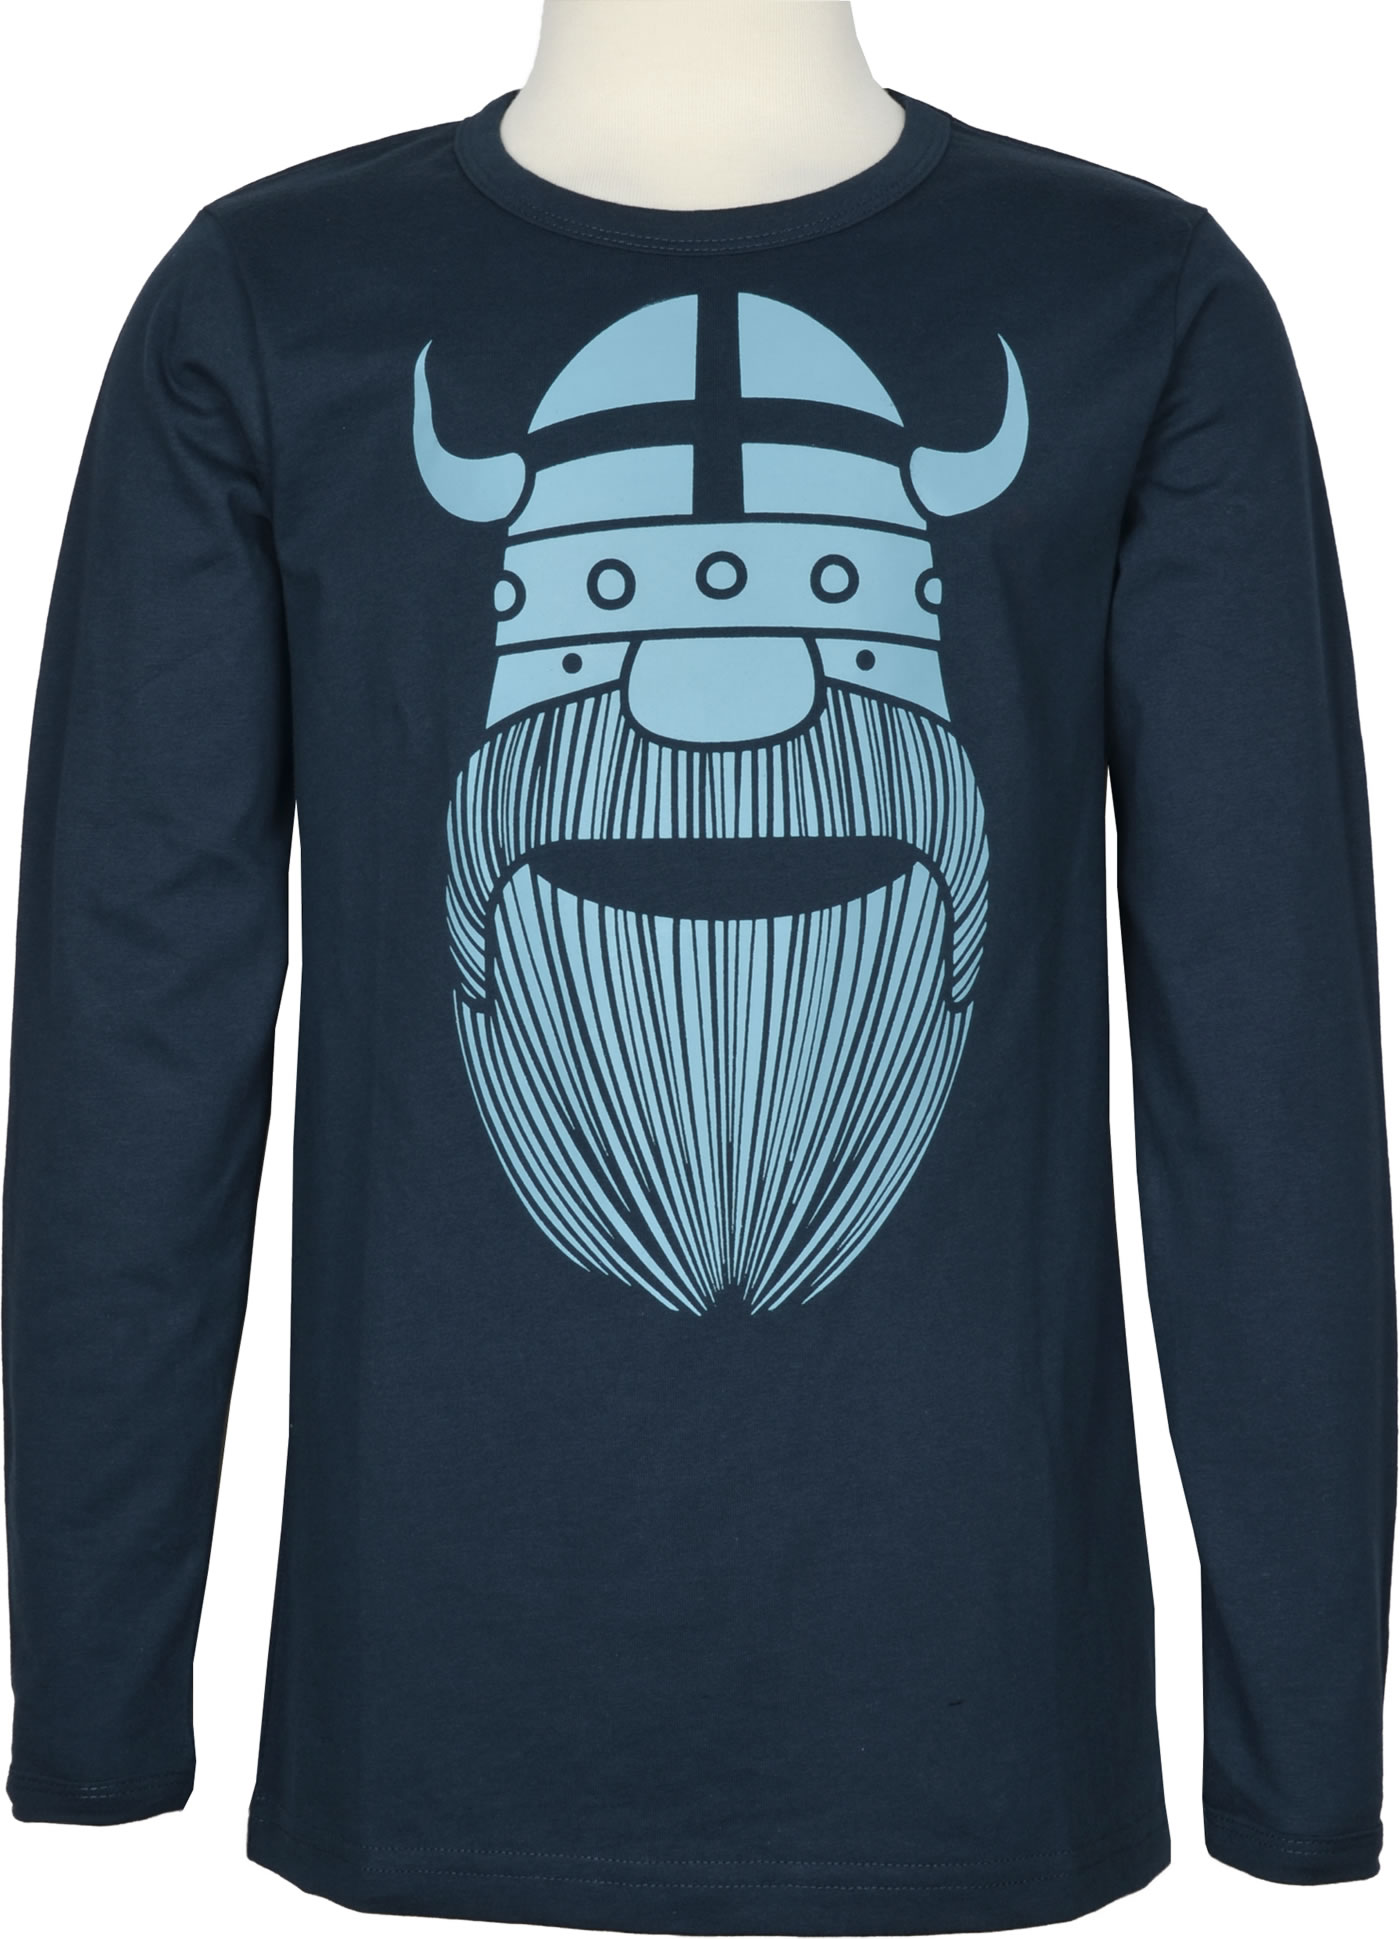 Danefae Shirt long sleeves ERIK BASIC deep ocean shop online at Papiton.